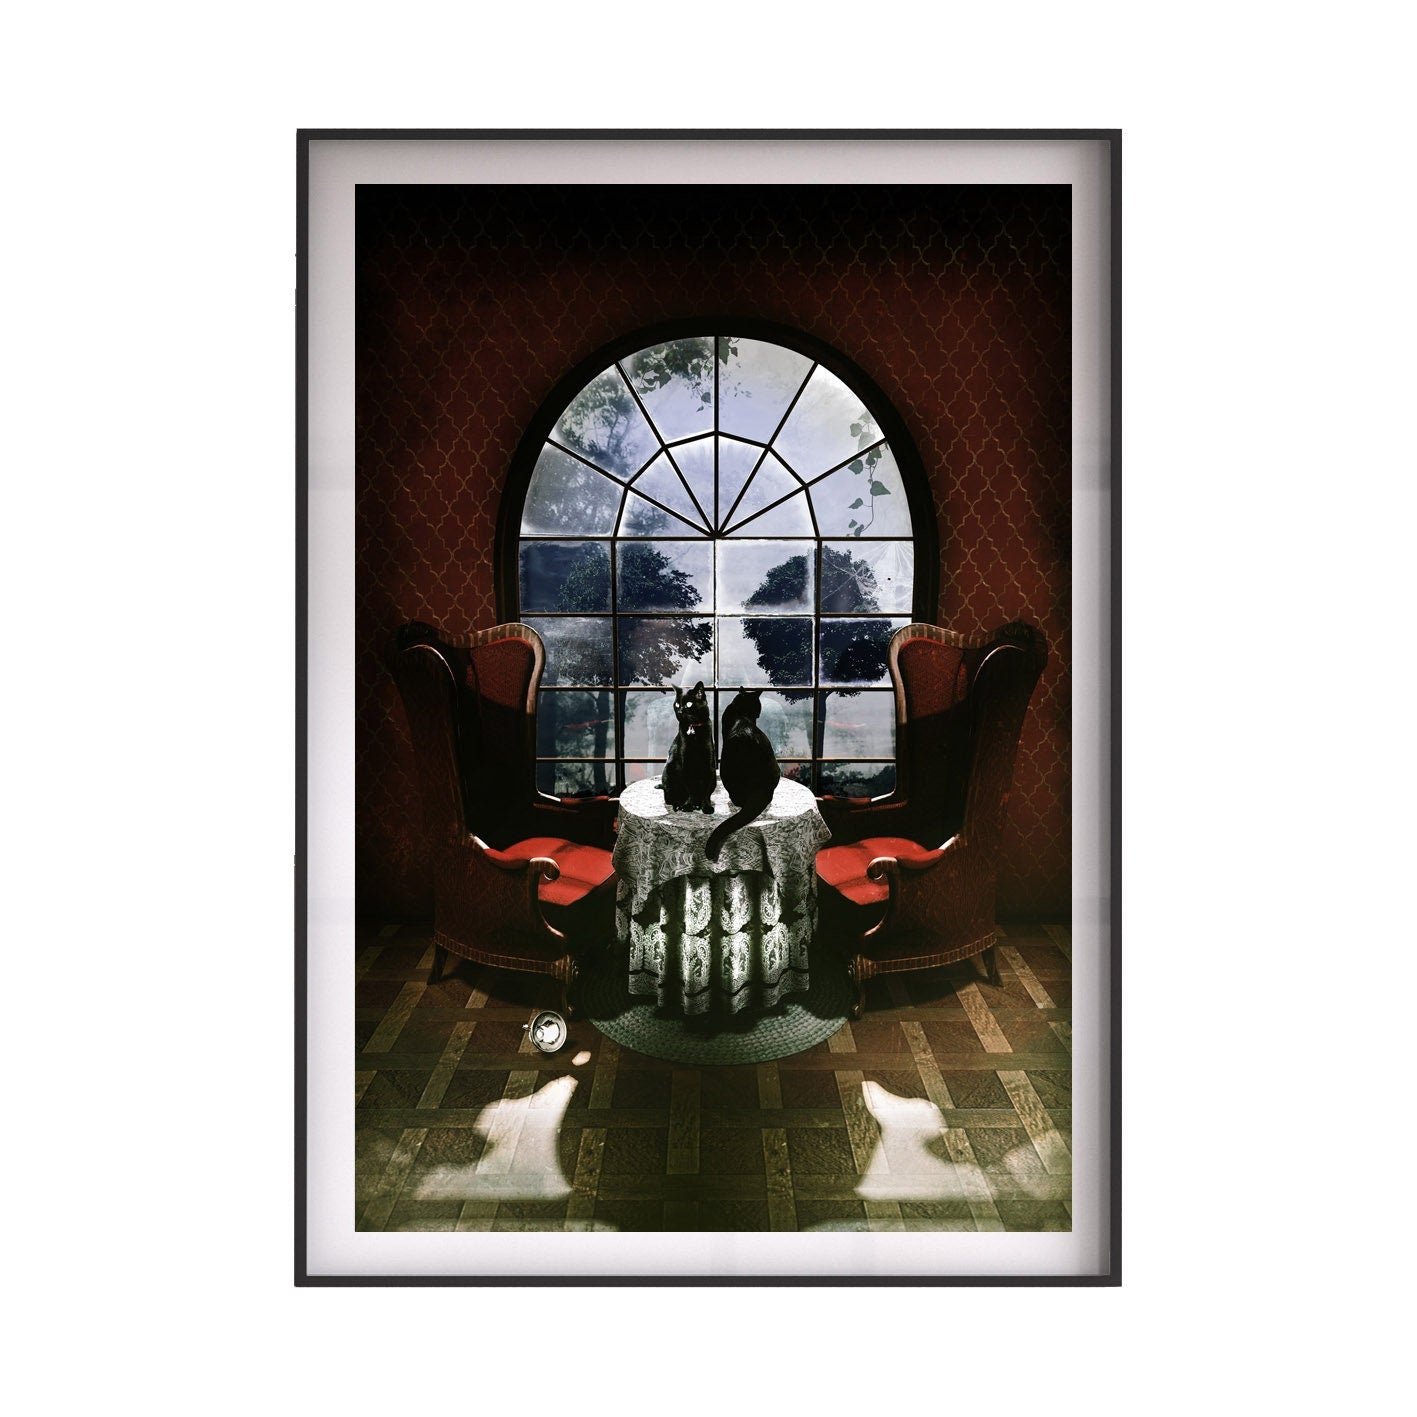 Room Skull Art Print, Gothic Skull Poster Home Decor, Sugar Skull Wall Art Gift, Skull Illusion Poster, Skull Art With Cats, Halloween Decor